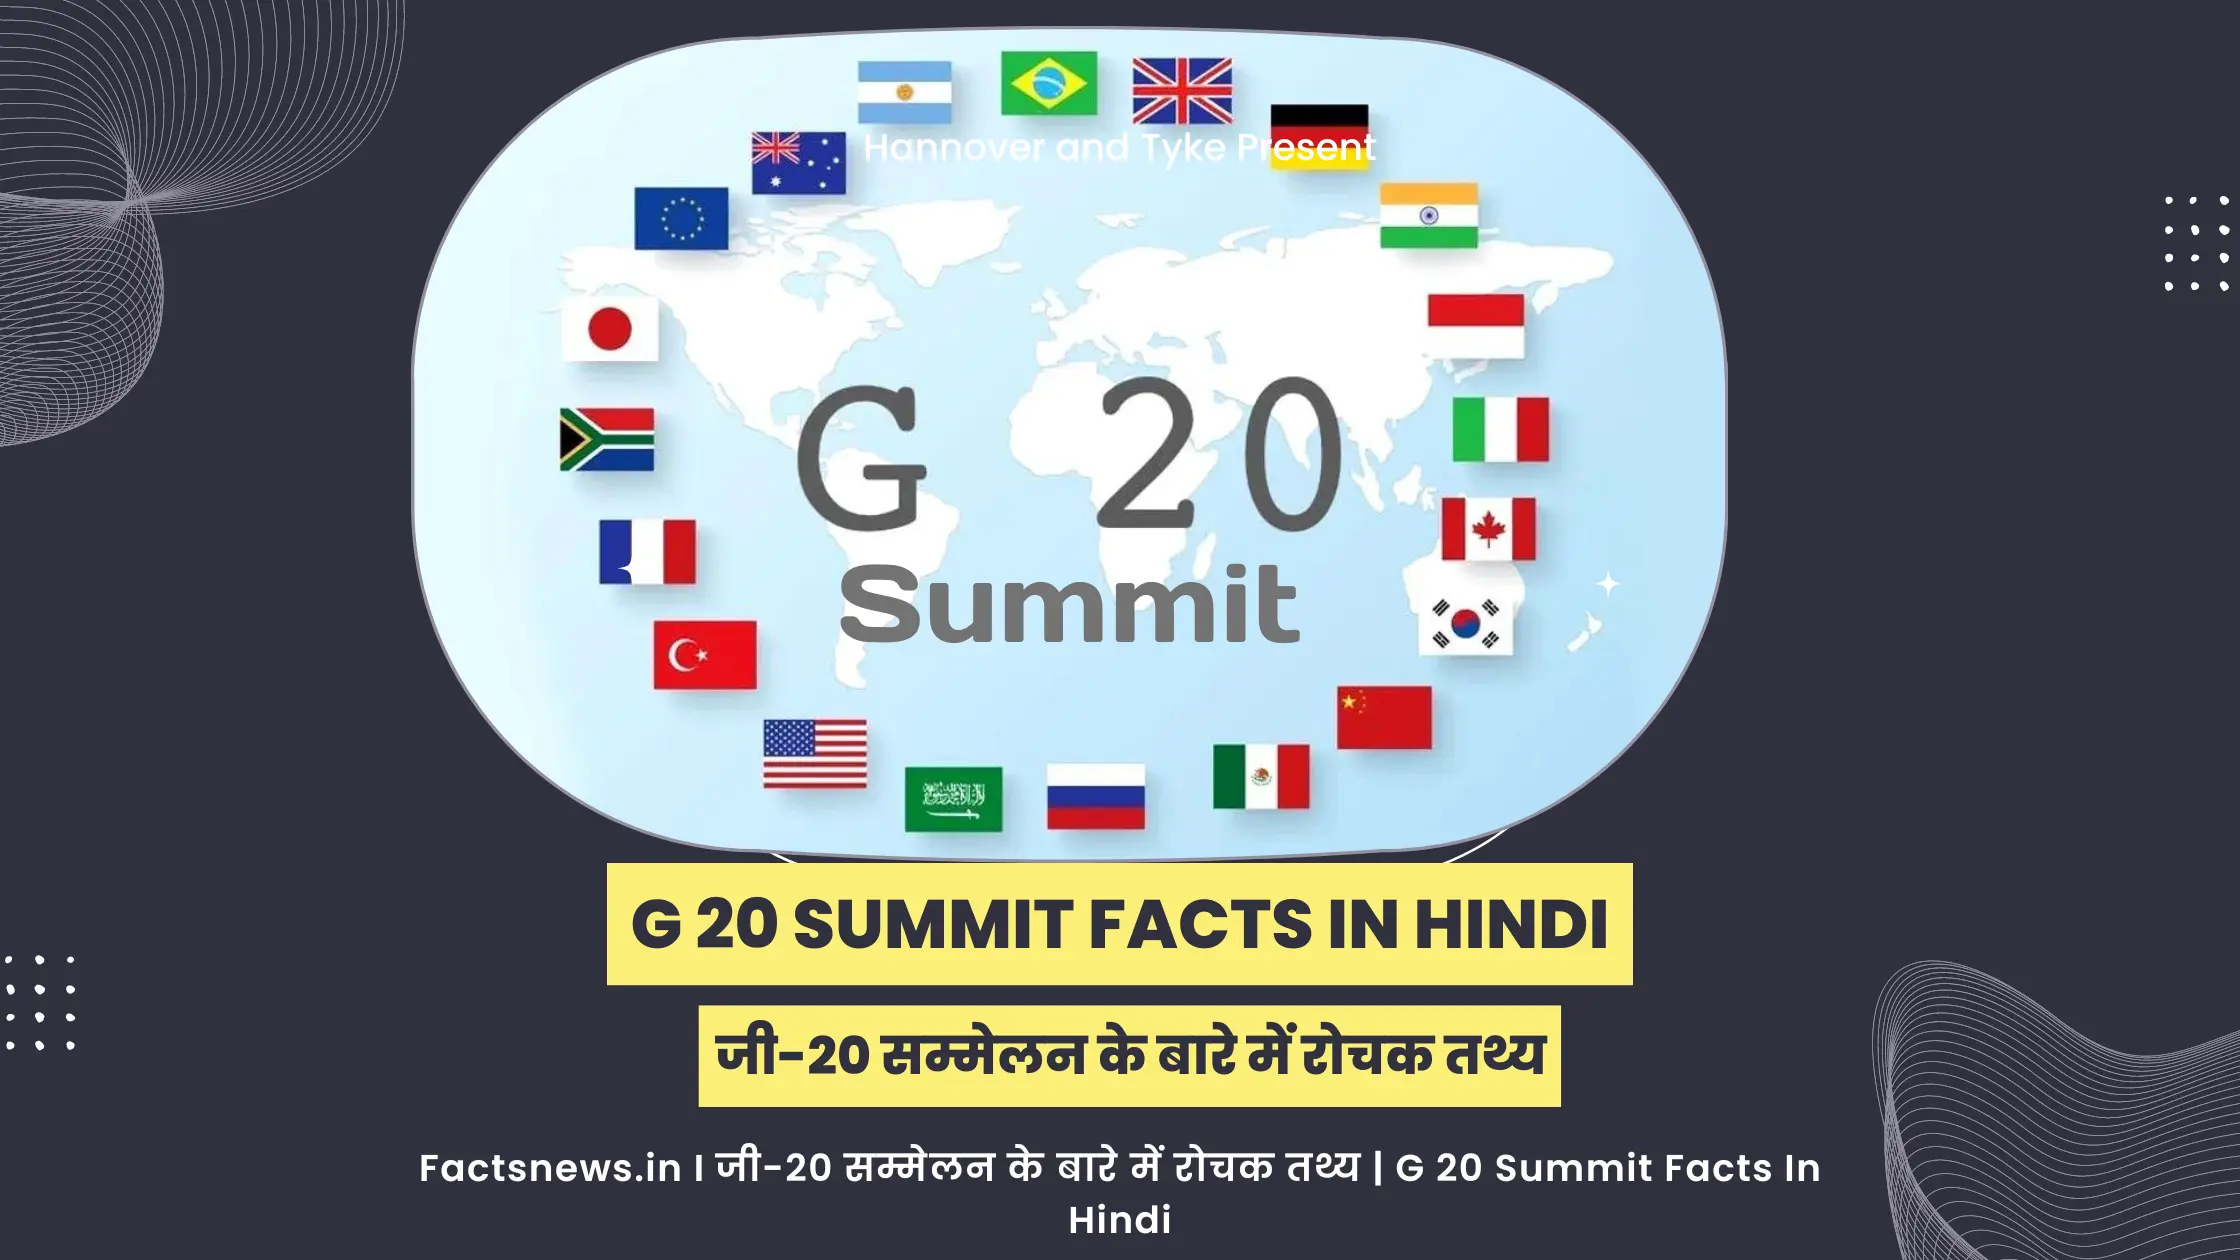 जी-20 सम्मेलन के बारे में रोचक तथ्य | G 20 Summit Facts In Hindi